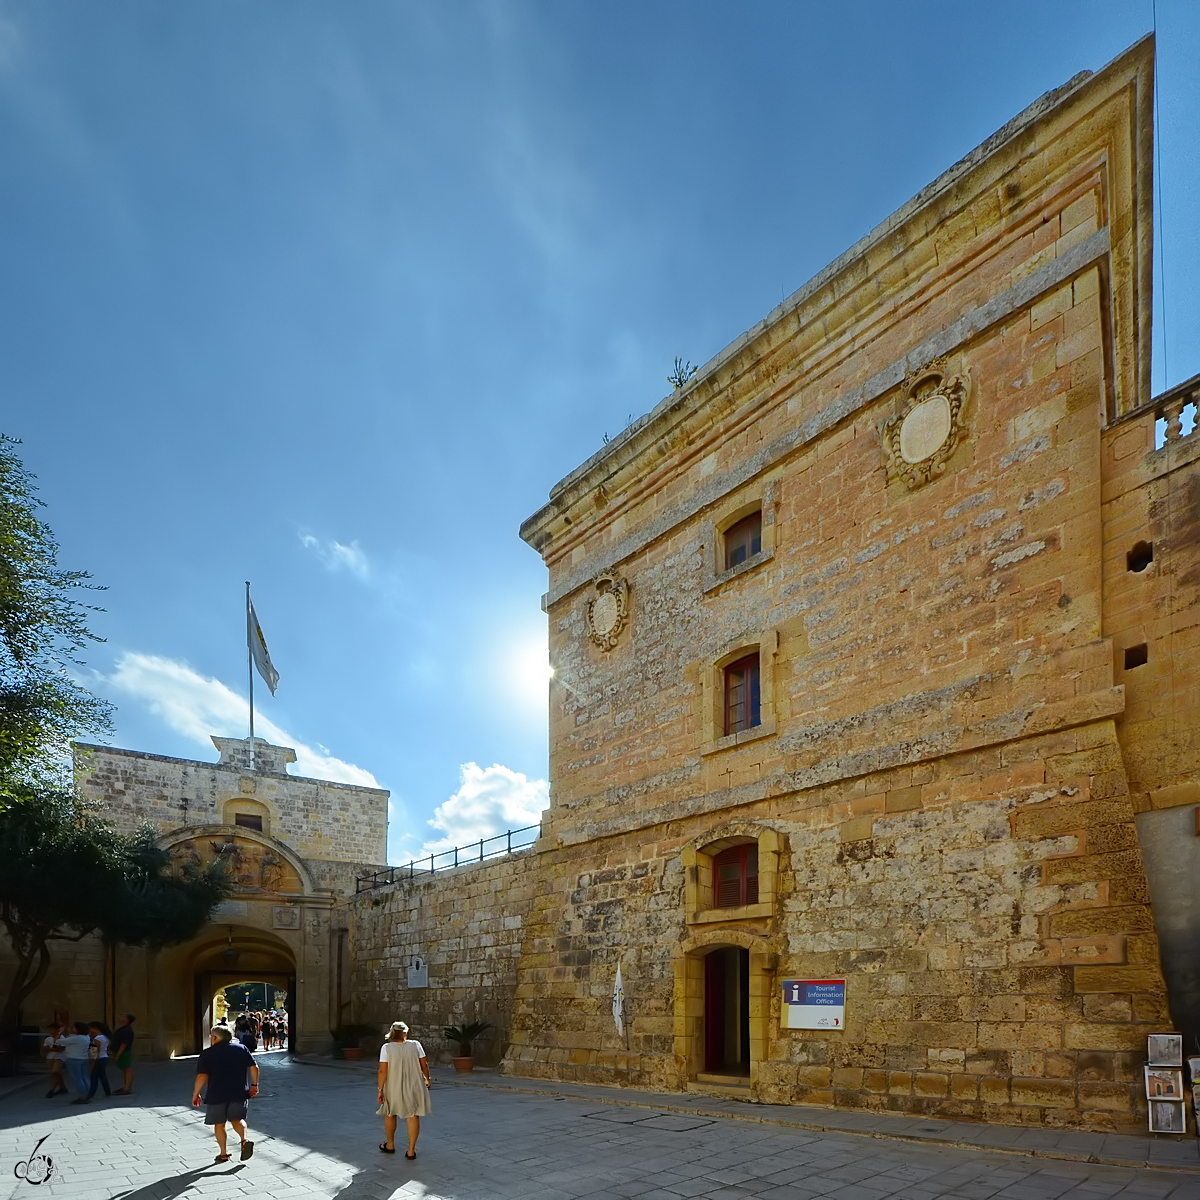 Der Torre dello Standardo (It-Torri tal-Istandard) wurde vom Johanniterorden zwischen 1725 und 1726 erbaut und diente der Kommunikation zwischen Mdina und dem Rest von Malta mit Signalen. (Oktober 2017)